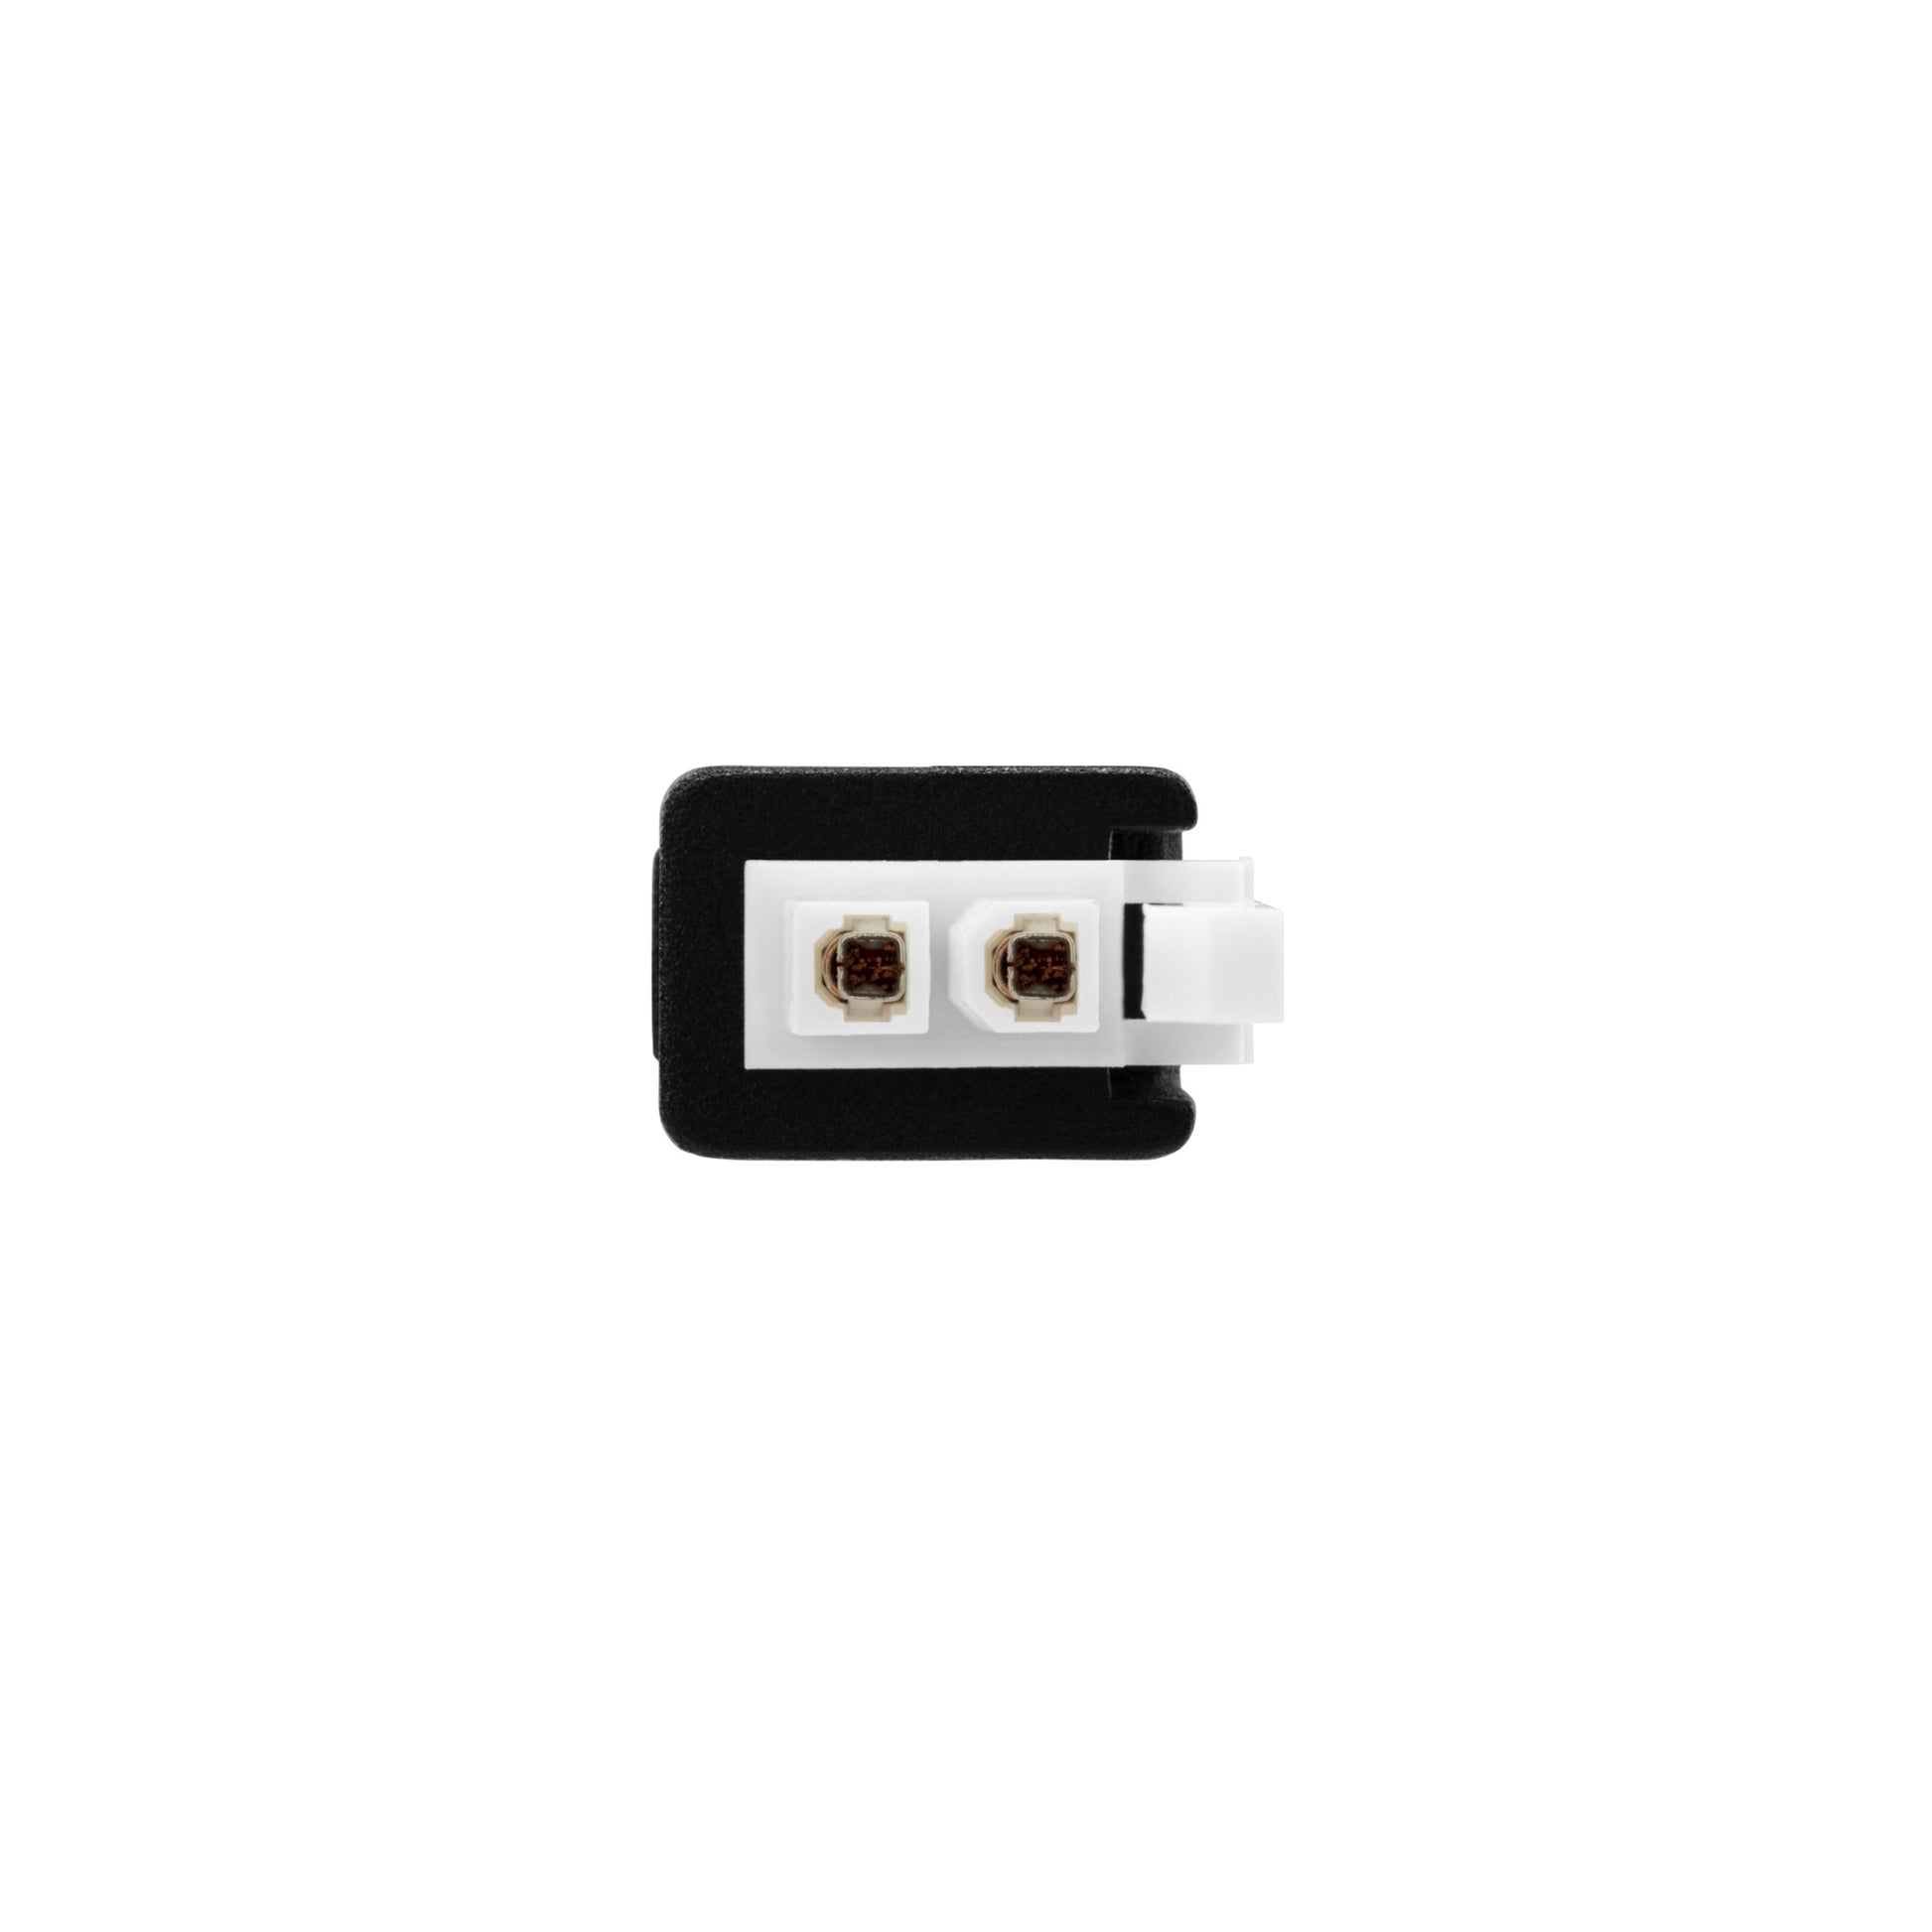 Molex Mini-Fit Jr 2-Pin output Plug